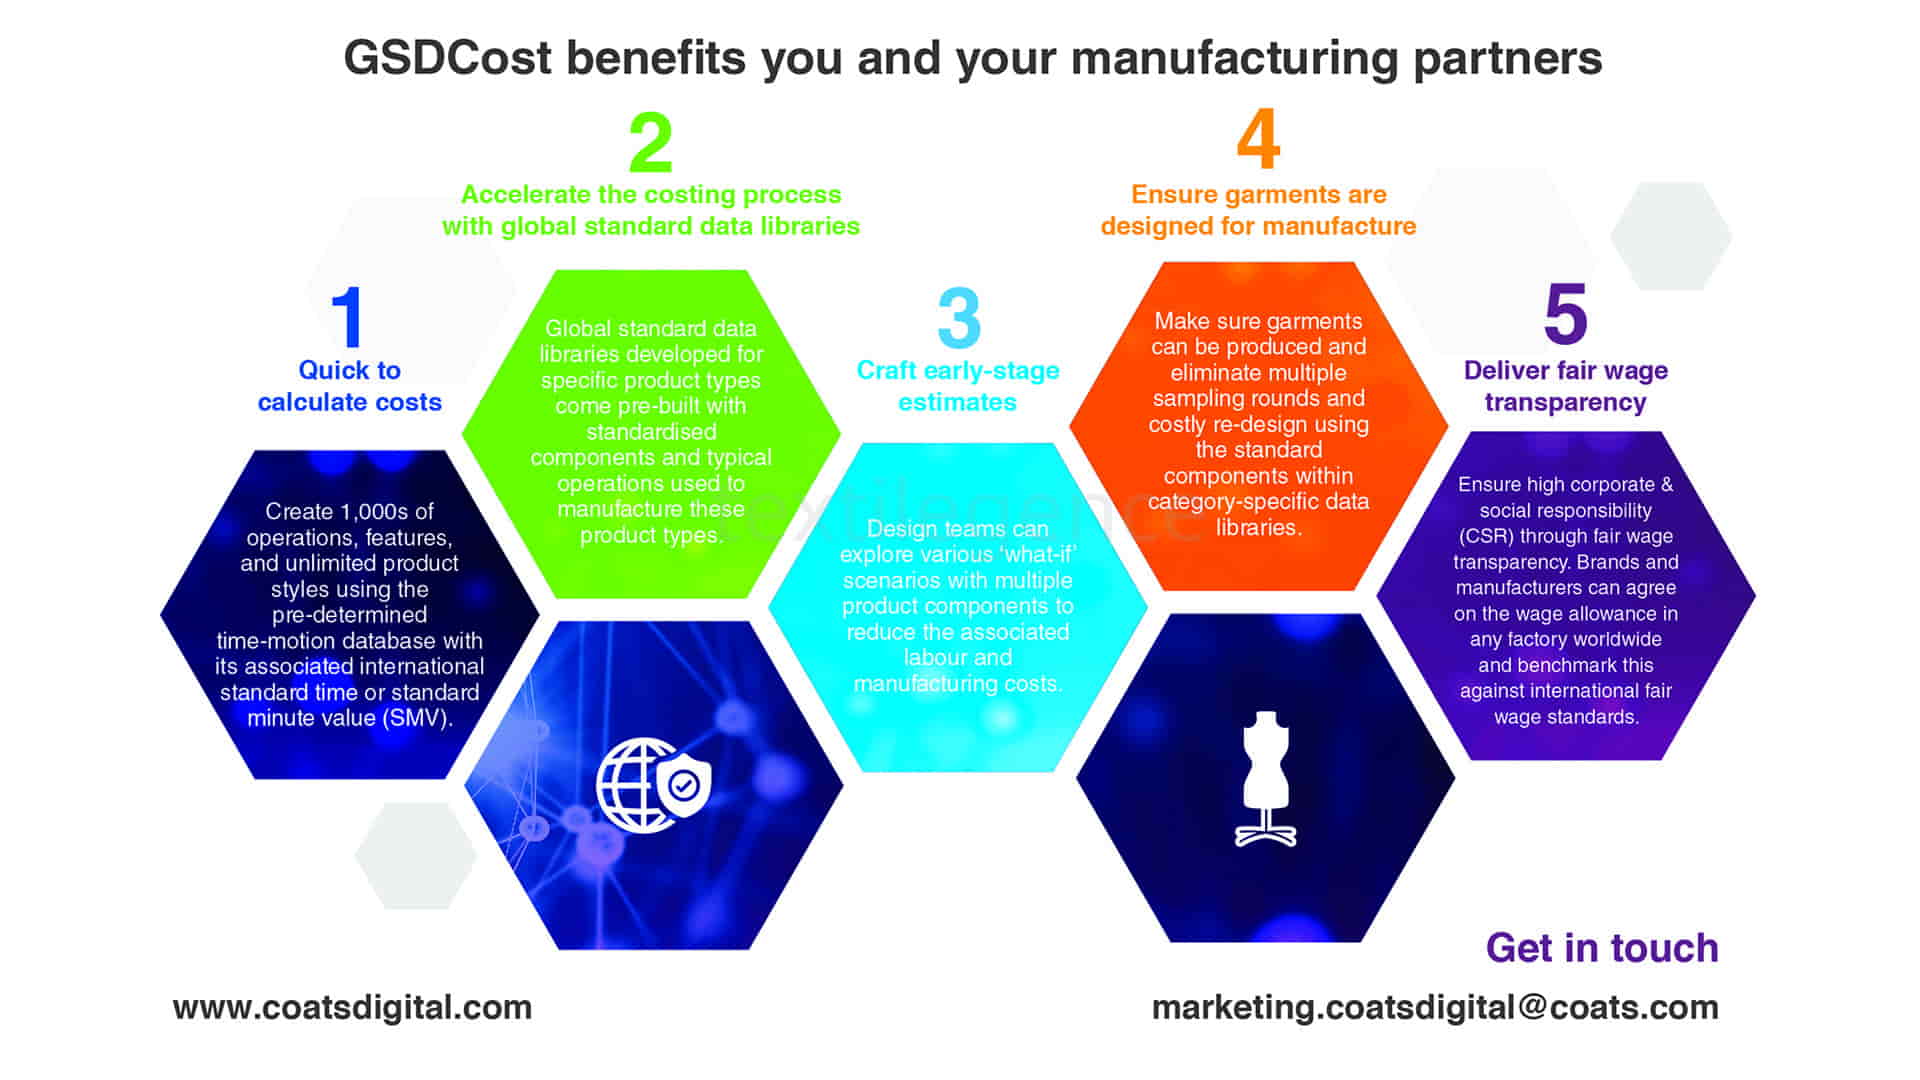 Coats Digital, markalar için yeni maliyet mükemmelliği işlevselliği ile GSDCost’u güçlendirerek markaların satış partnerleriyle daha verimli, şeffaf ve sürdürülebilir iş birliğine olanak sağlayacak   Görsel Kaynak: COATS